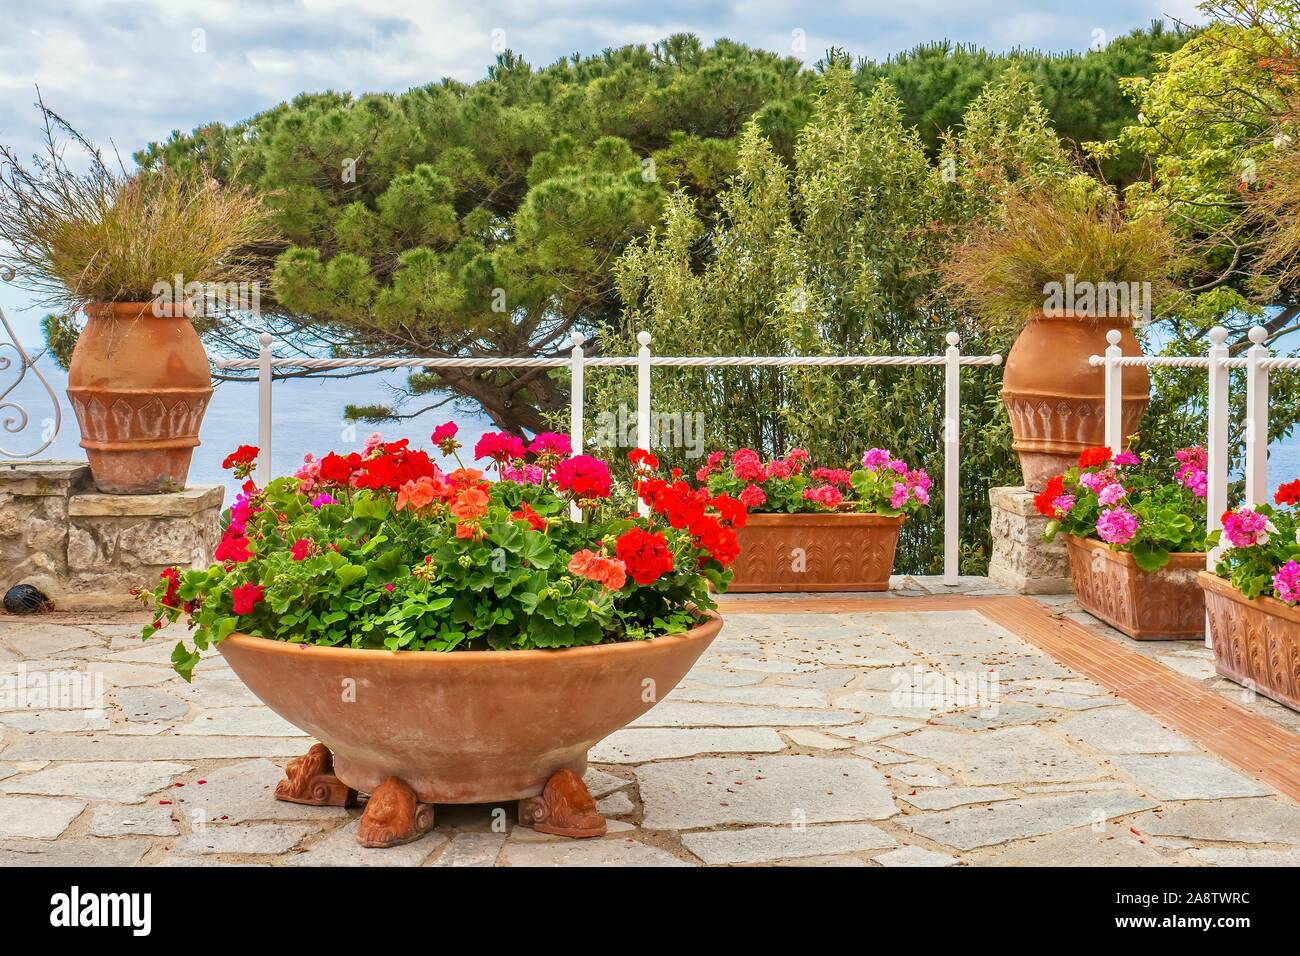 Un jardín de verano en el mar. Coloridos geranios en macetas de terracota en una terraza de piedra con vistas al mar Mediterráneo en Italia. Foto de stock